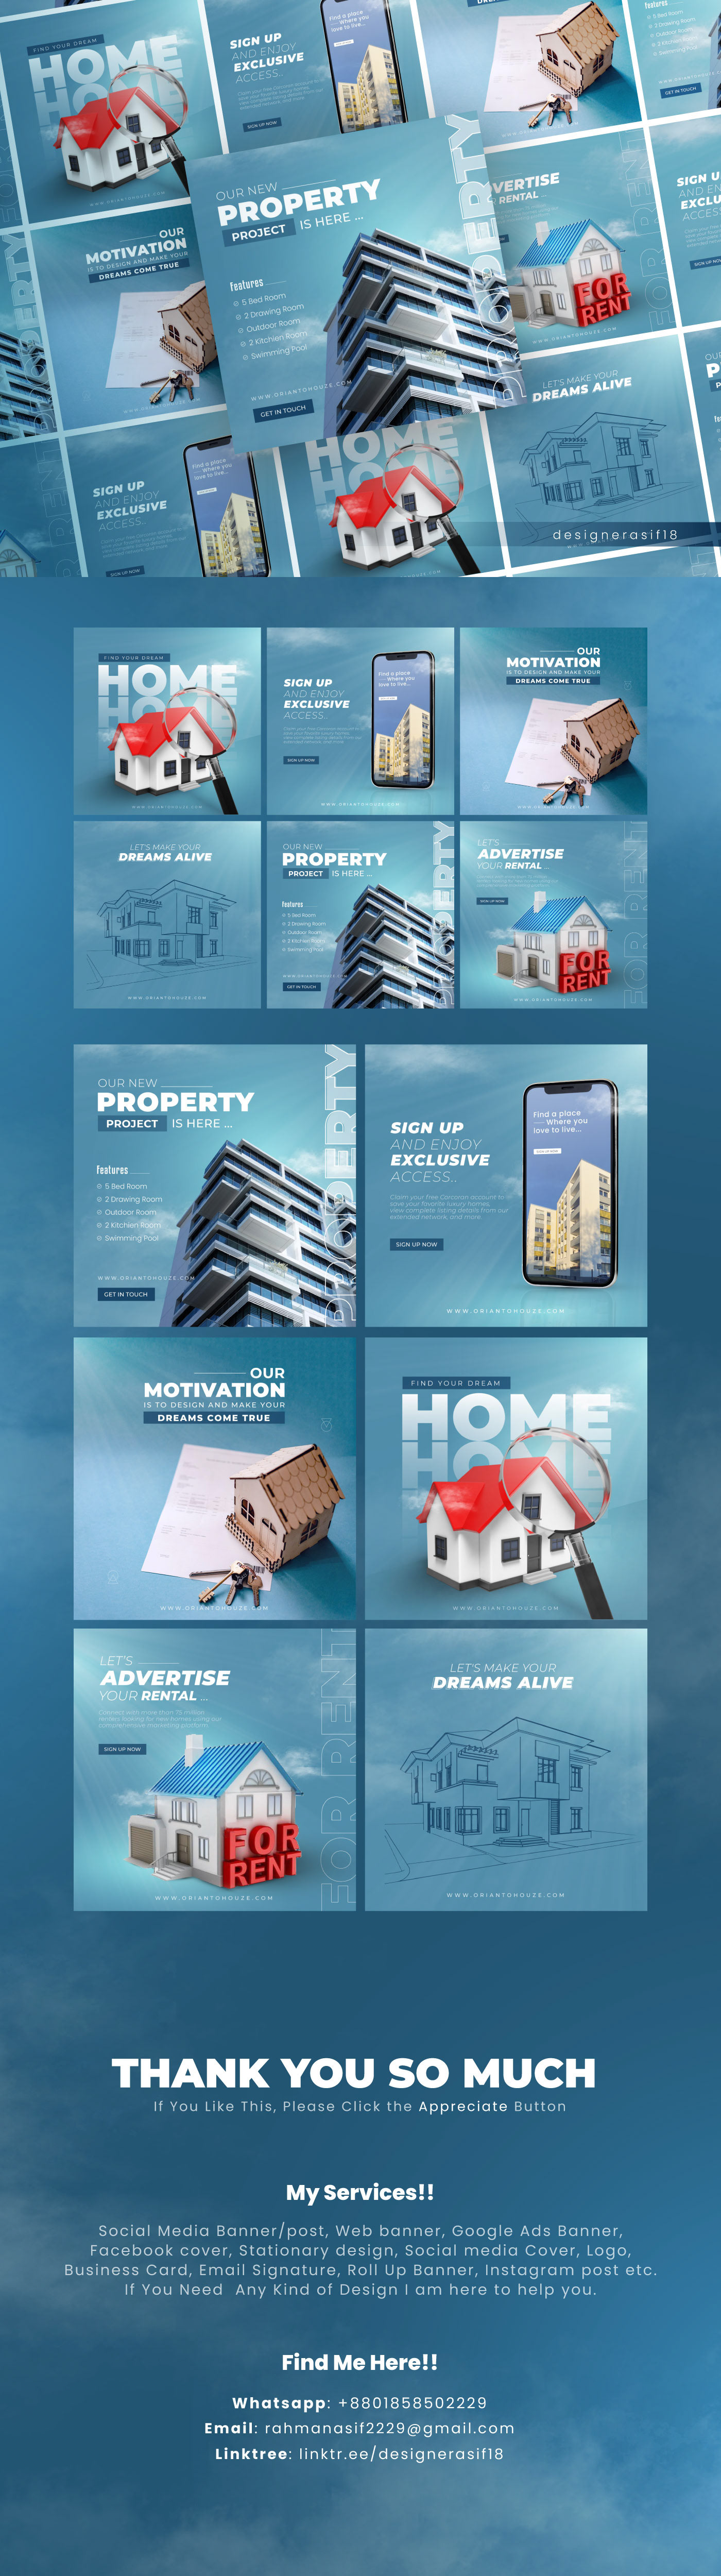 banner;
design;
Instagram Post;
real estate;
social media;
Social Media Banner;
Social Media Design;